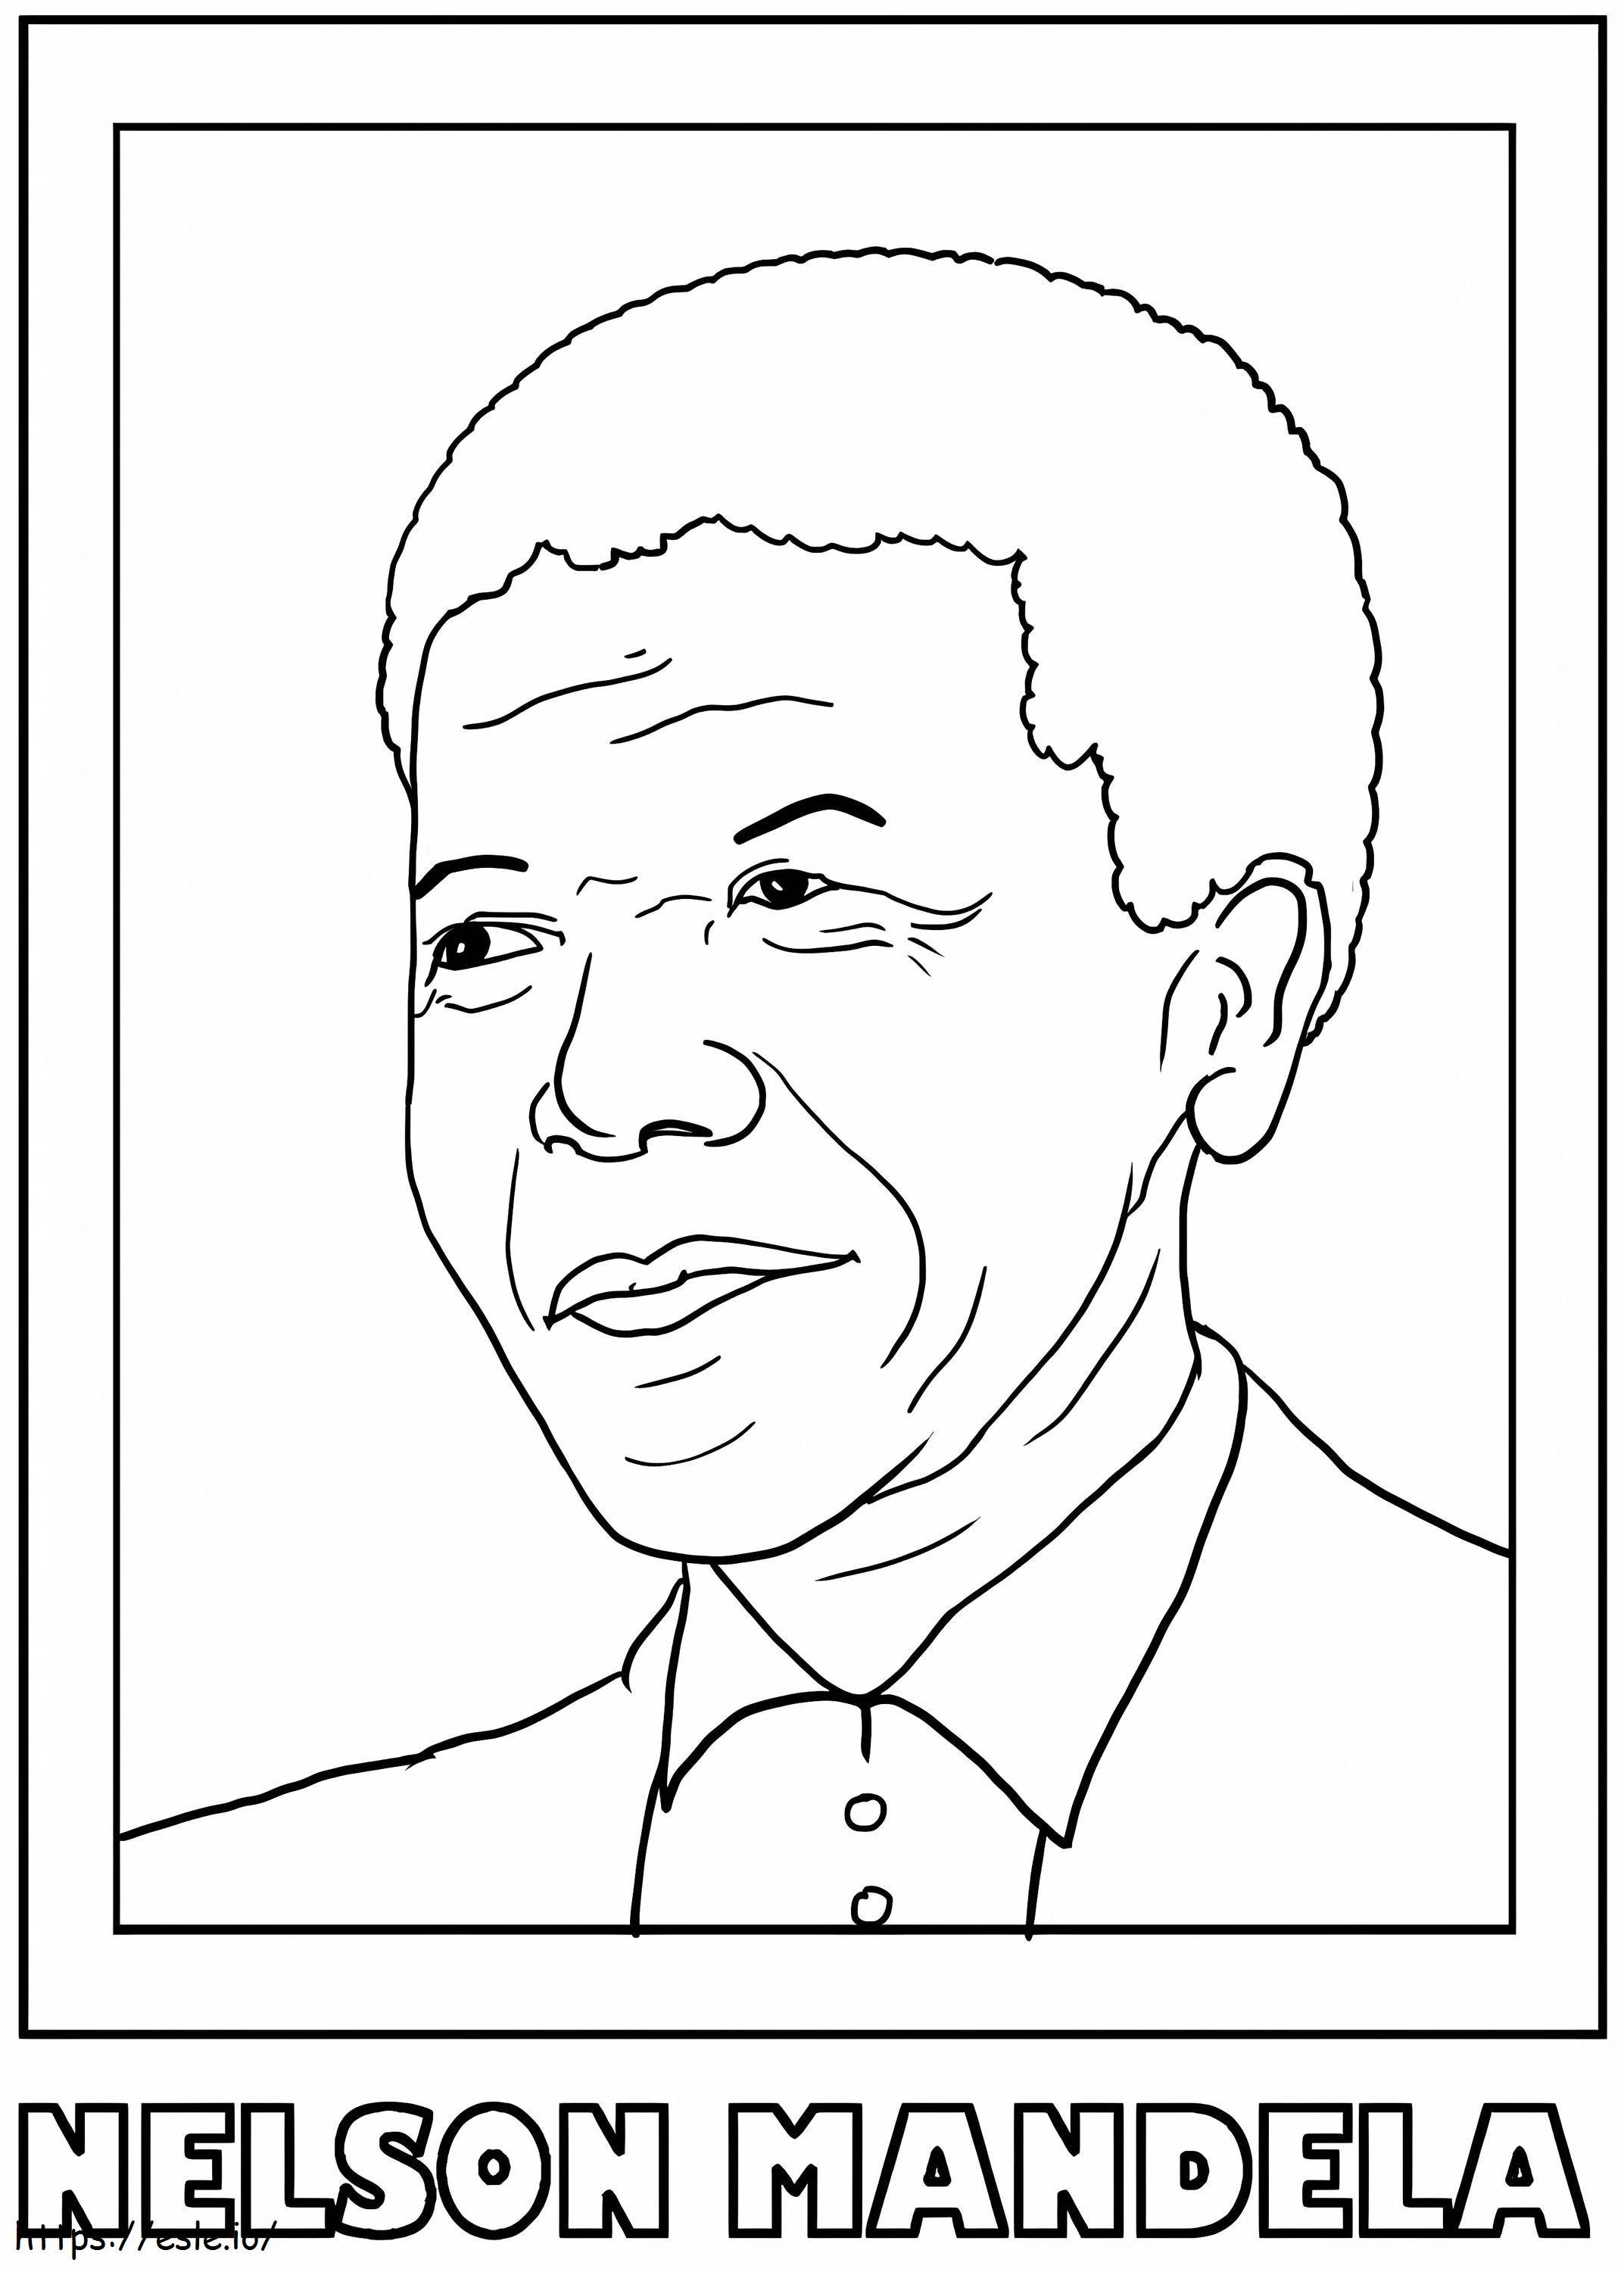 Nelson Mandela7 kleurplaat kleurplaat